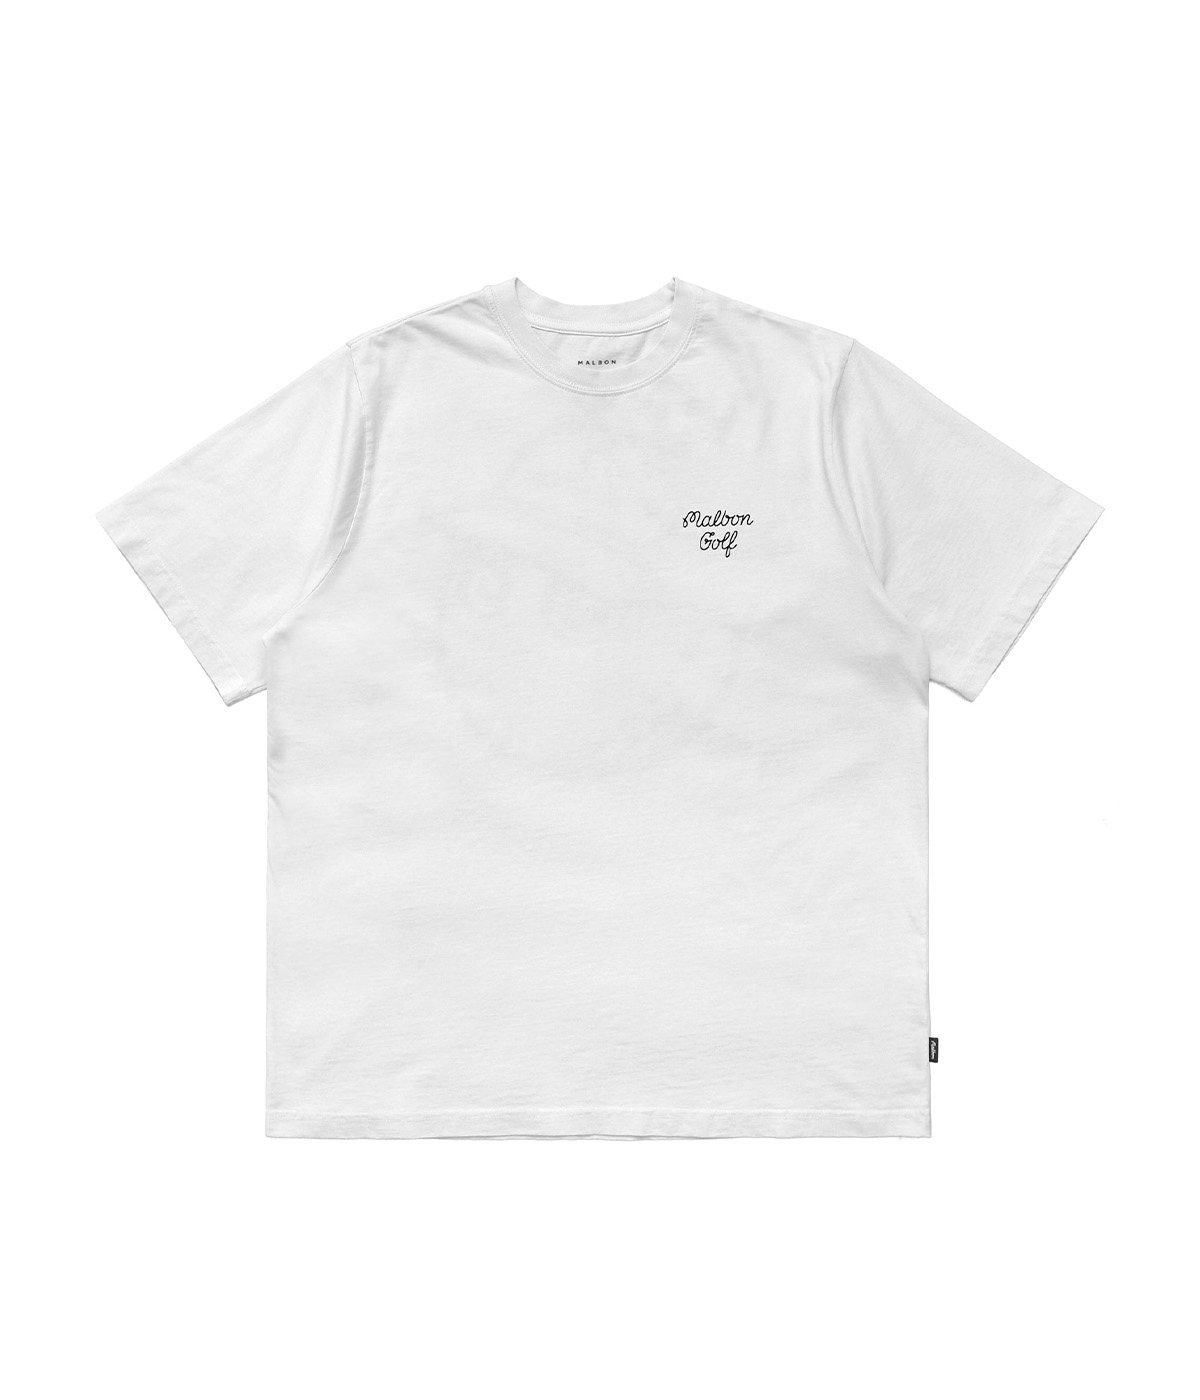 Malbon Golf T-shirt M Script Blur White 2